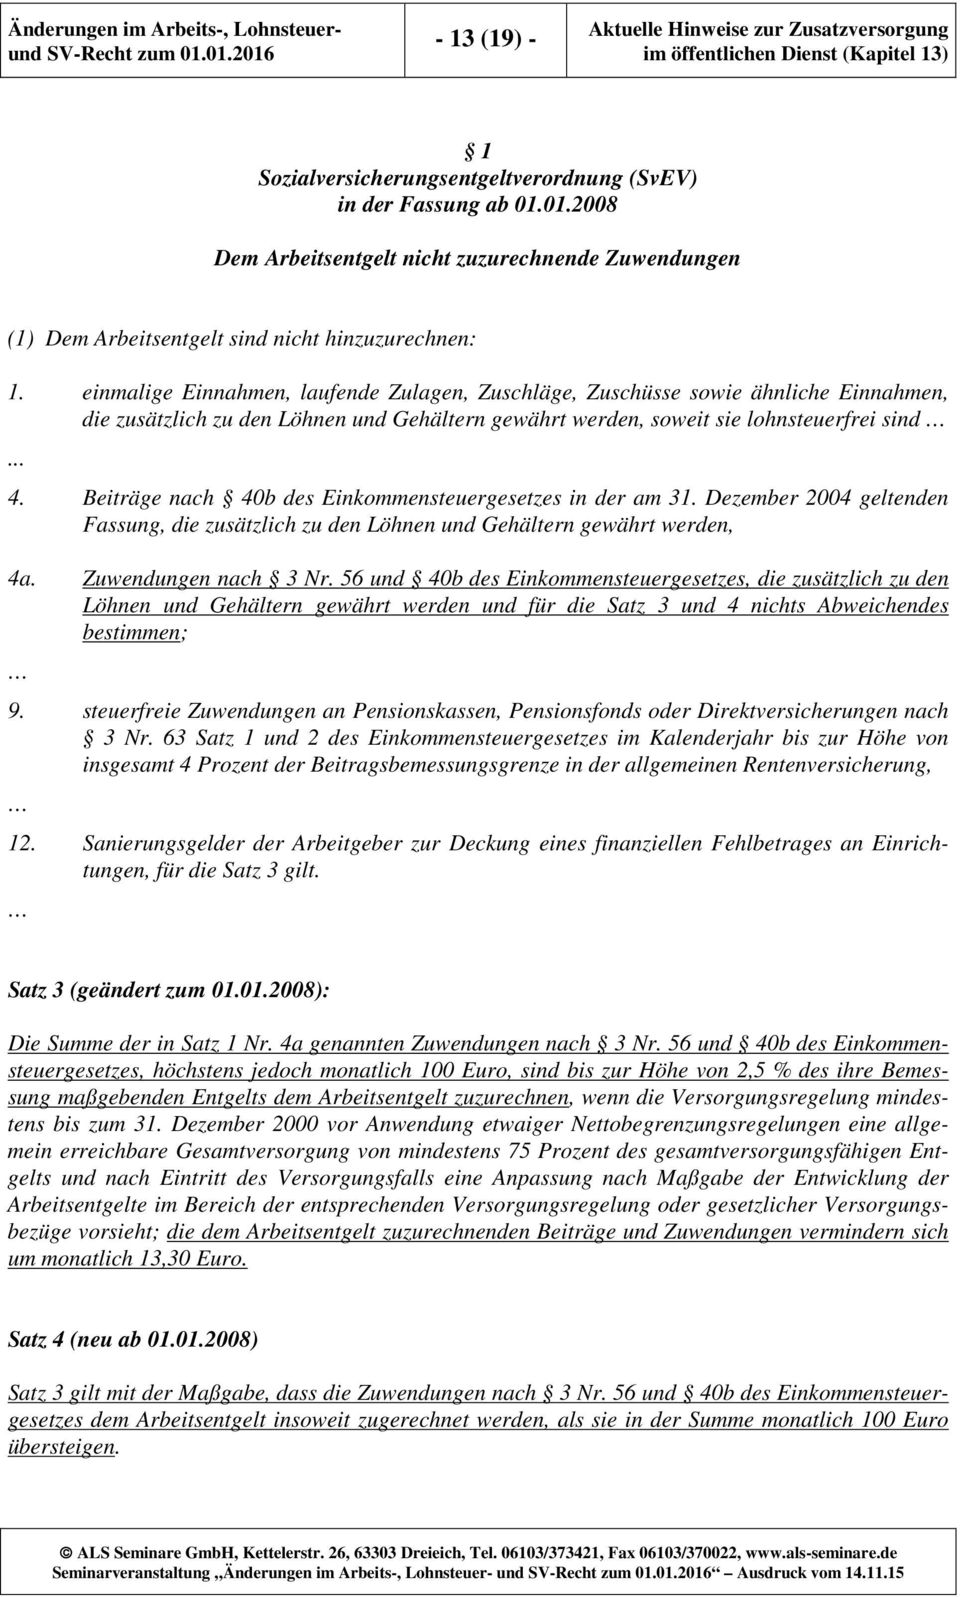 Beiträge nach 40b des Einkommensteuergesetzes in der am 31. Dezember 2004 geltenden Fassung, die zusätzlich zu den Löhnen und Gehältern gewährt werden, 4a. Zuwendungen nach 3 Nr.